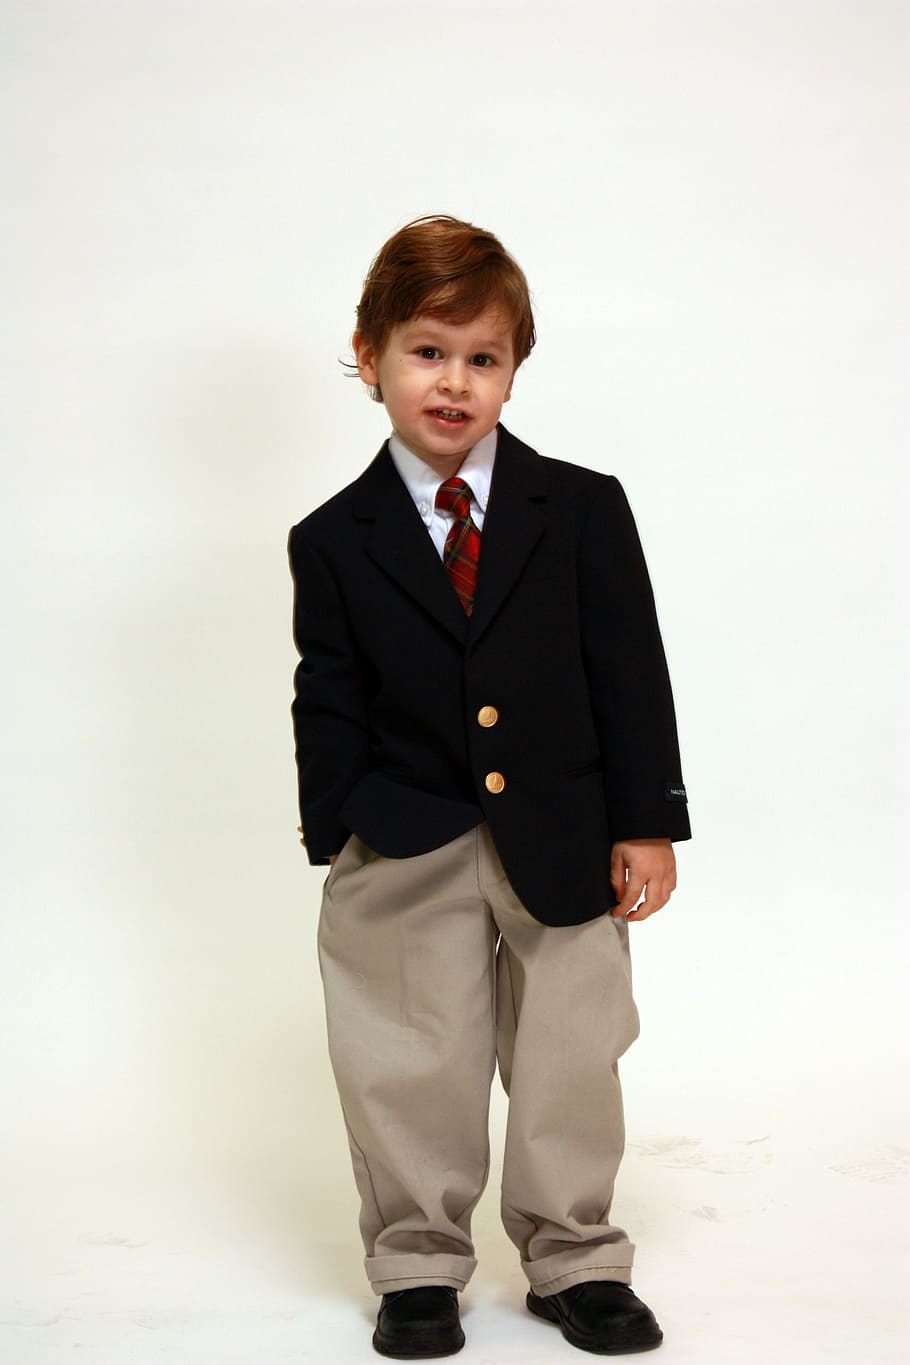 boy in suit jacket standing near white wall, portrait, formal, HD wallpaper